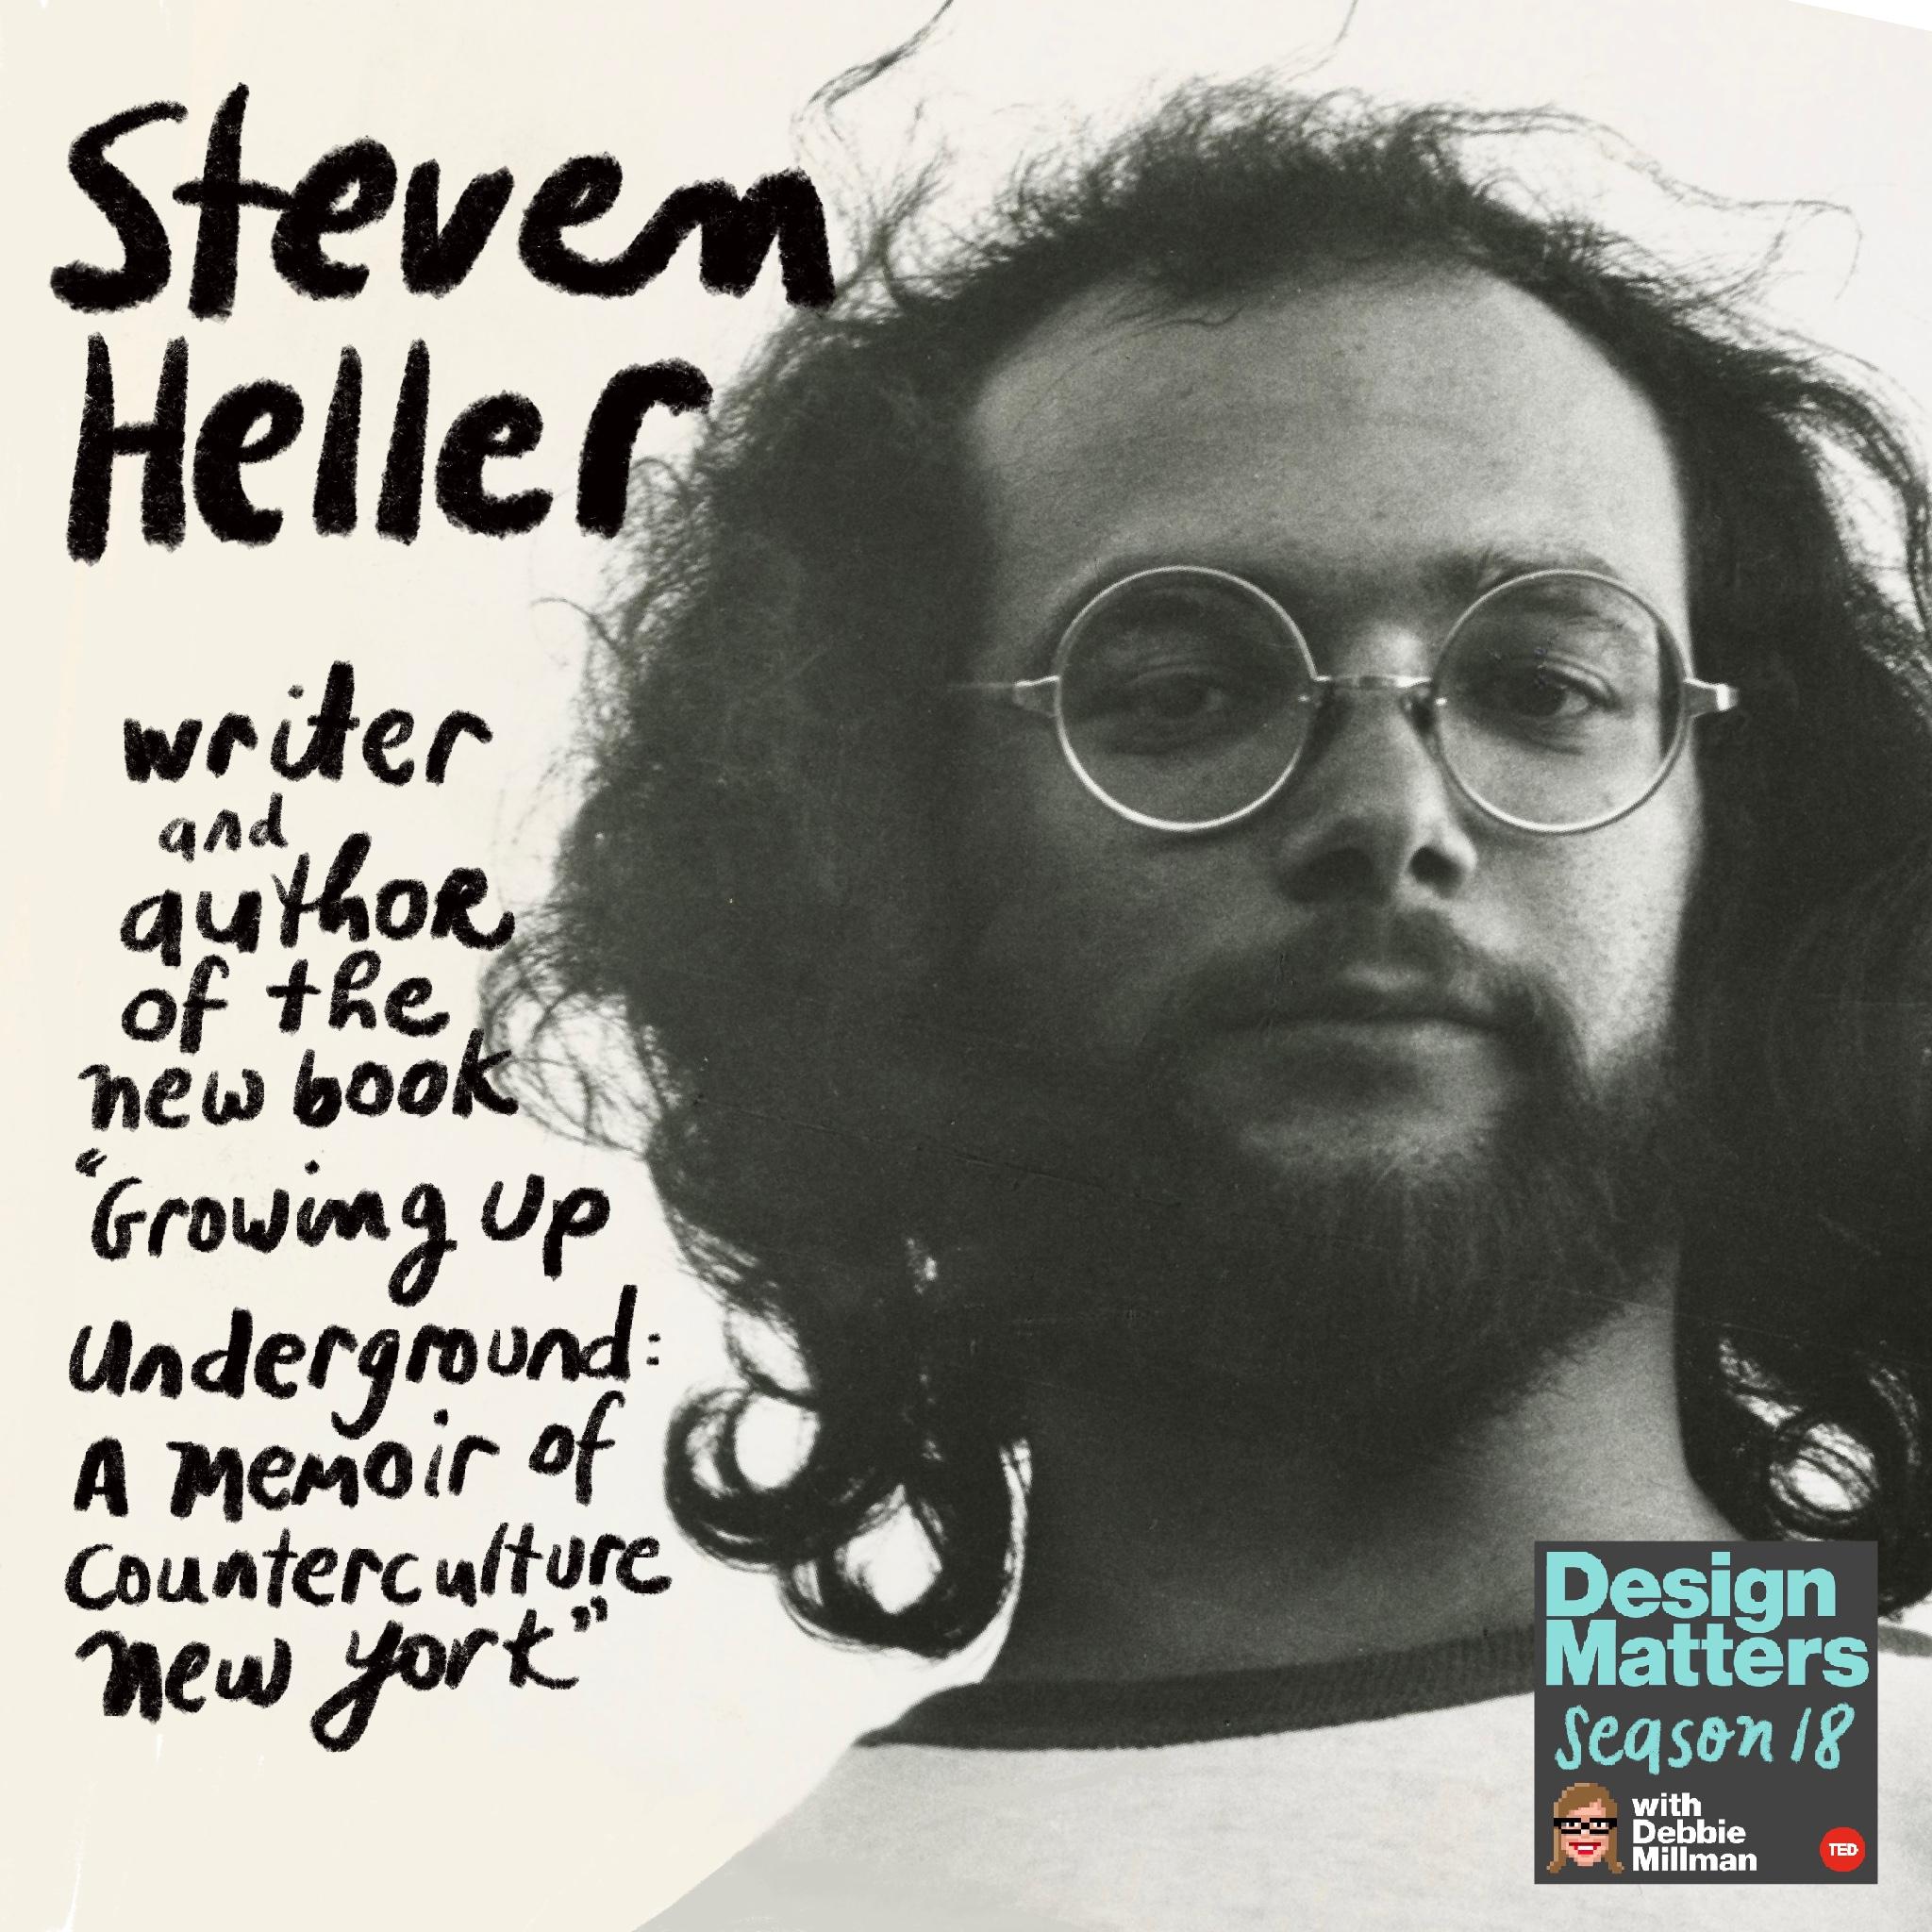 Thumbnail for "Best of Design Matters: Steven Heller".